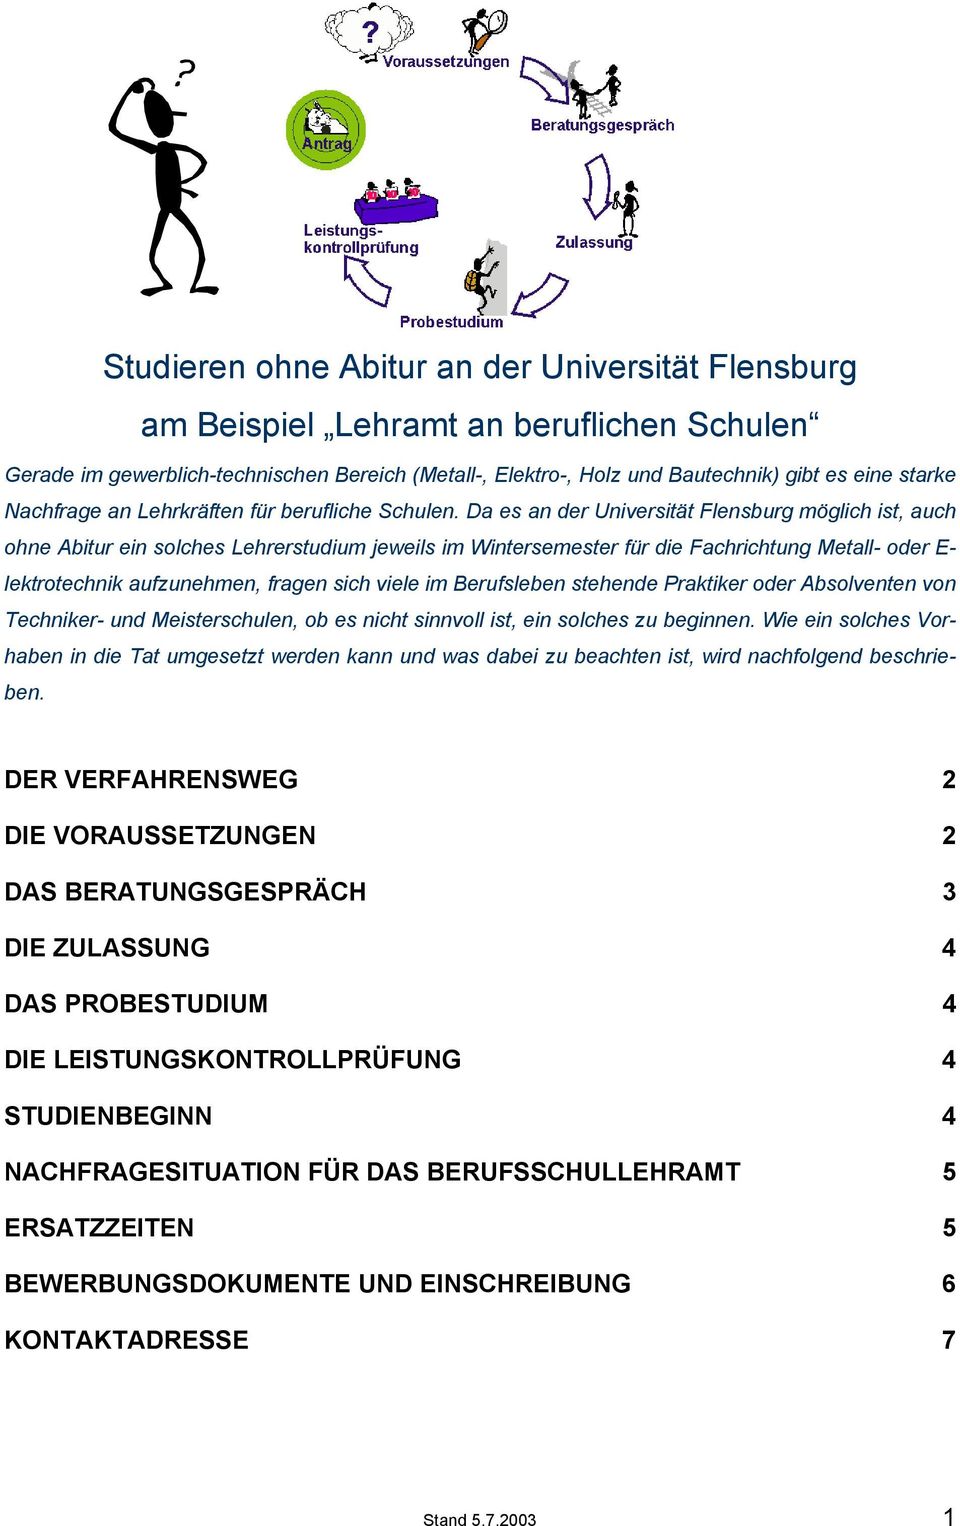 Da es an der Universität Flensburg möglich ist, auch ohne Abitur ein solches Lehrerstudium jeweils im Wintersemester für die Fachrichtung Metall- oder E- lektrotechnik aufzunehmen, fragen sich viele